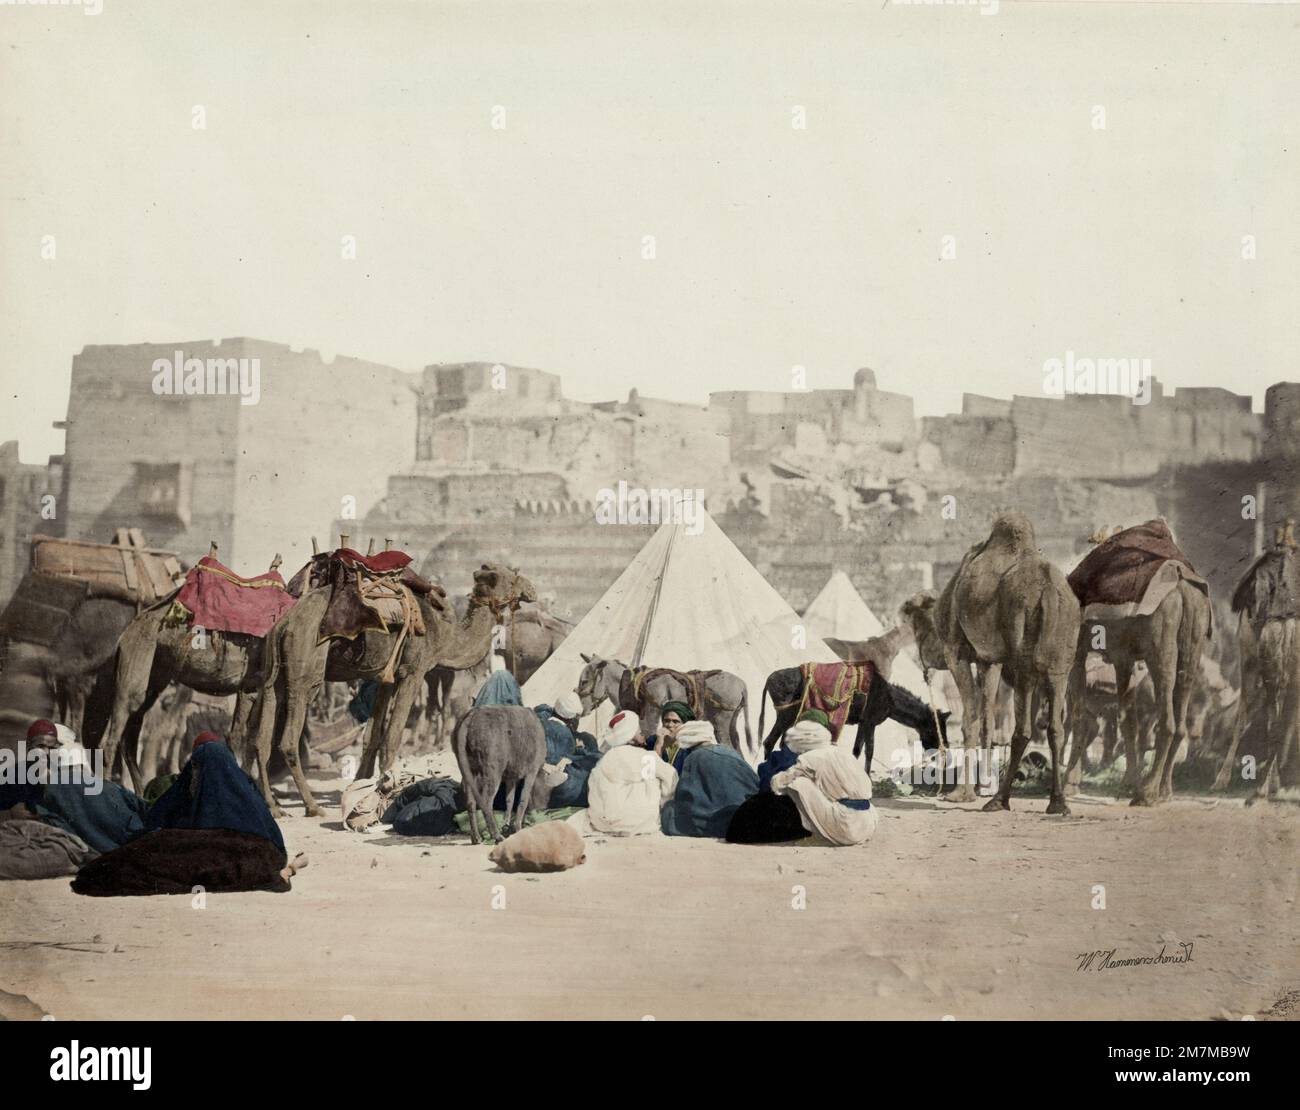 Wilhelm Hammerschmidt Studio: Jahrgang 19. c. Foto - Kamelkarawanlager, Kairo, Ägypten Stockfoto